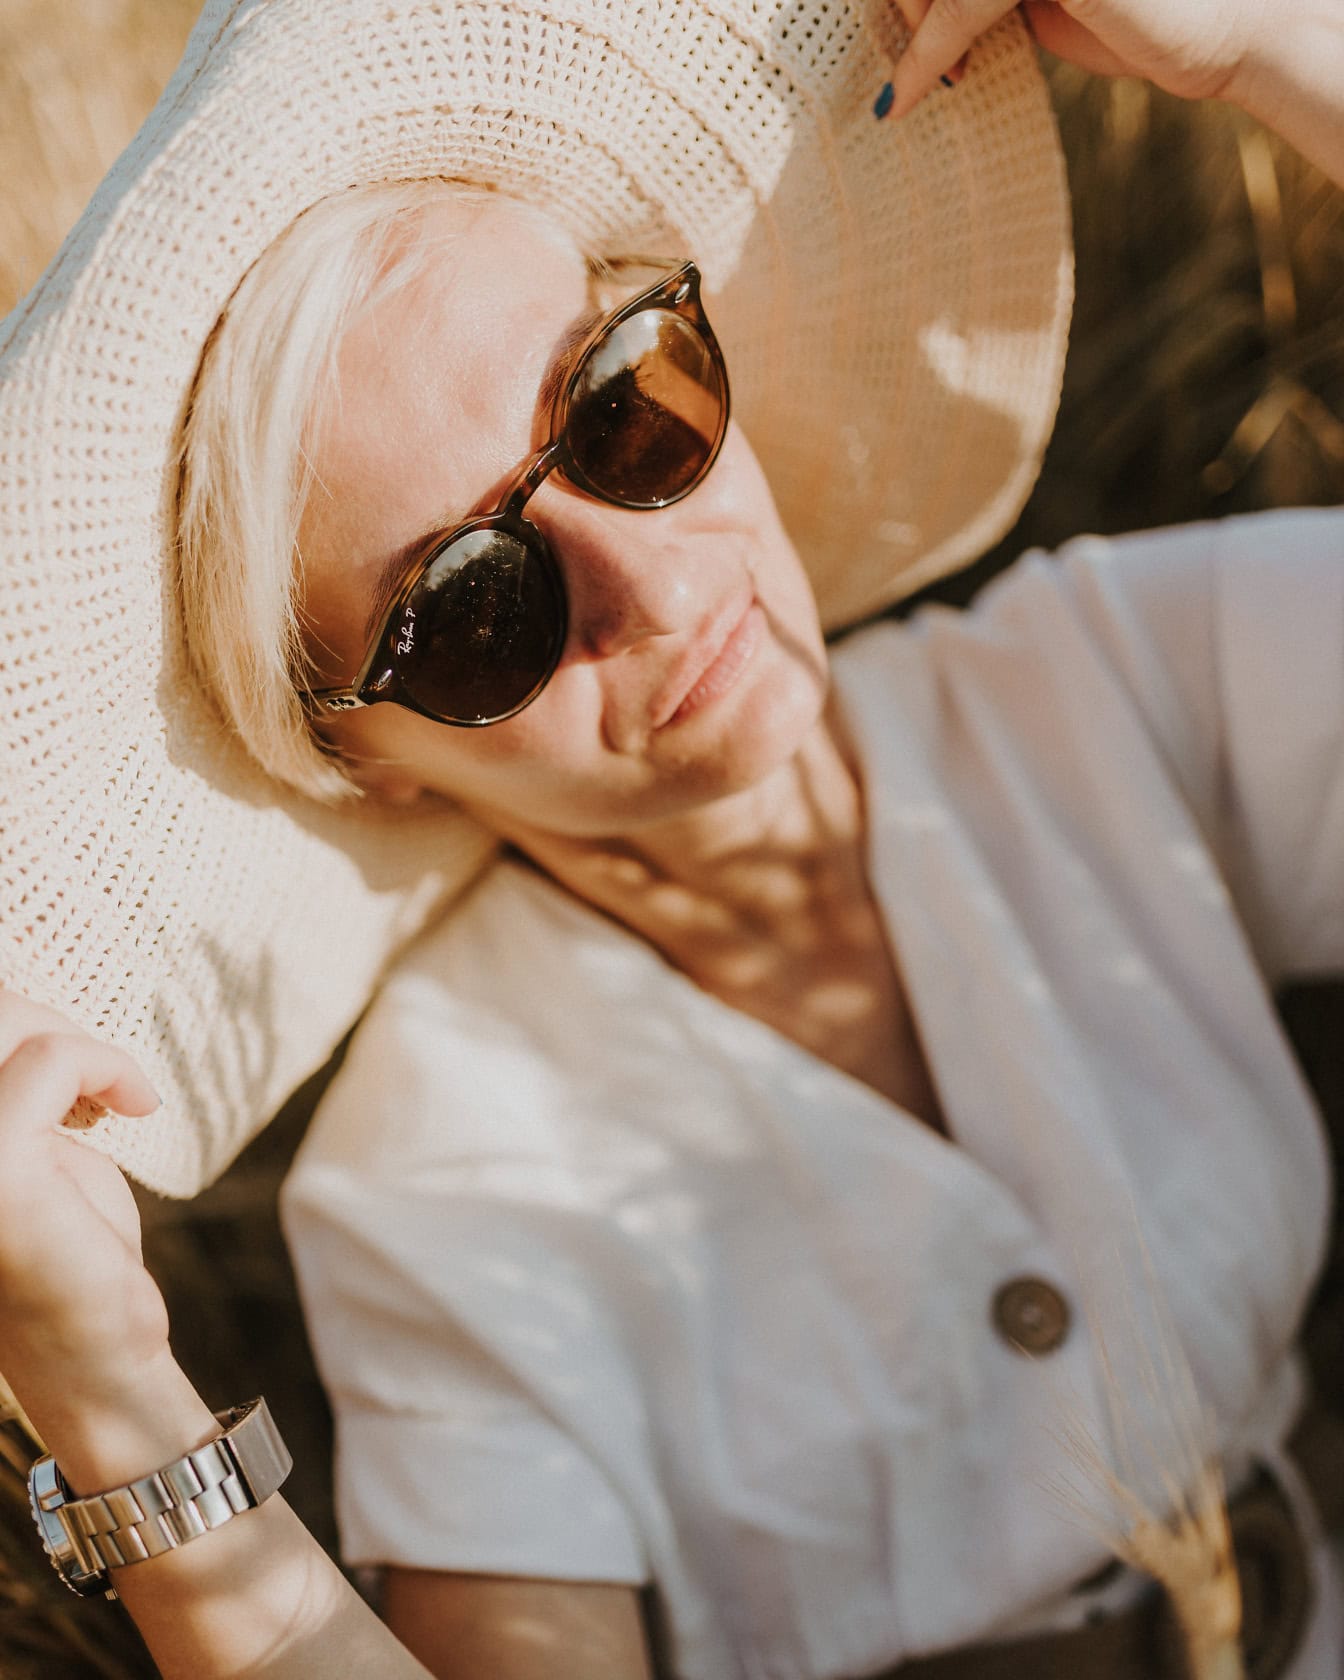 Chân dung khuôn mặt của một phụ nữ quyến rũ đội mũ màu be, váy trắng và kính râm vào ngày hè đầy nắng